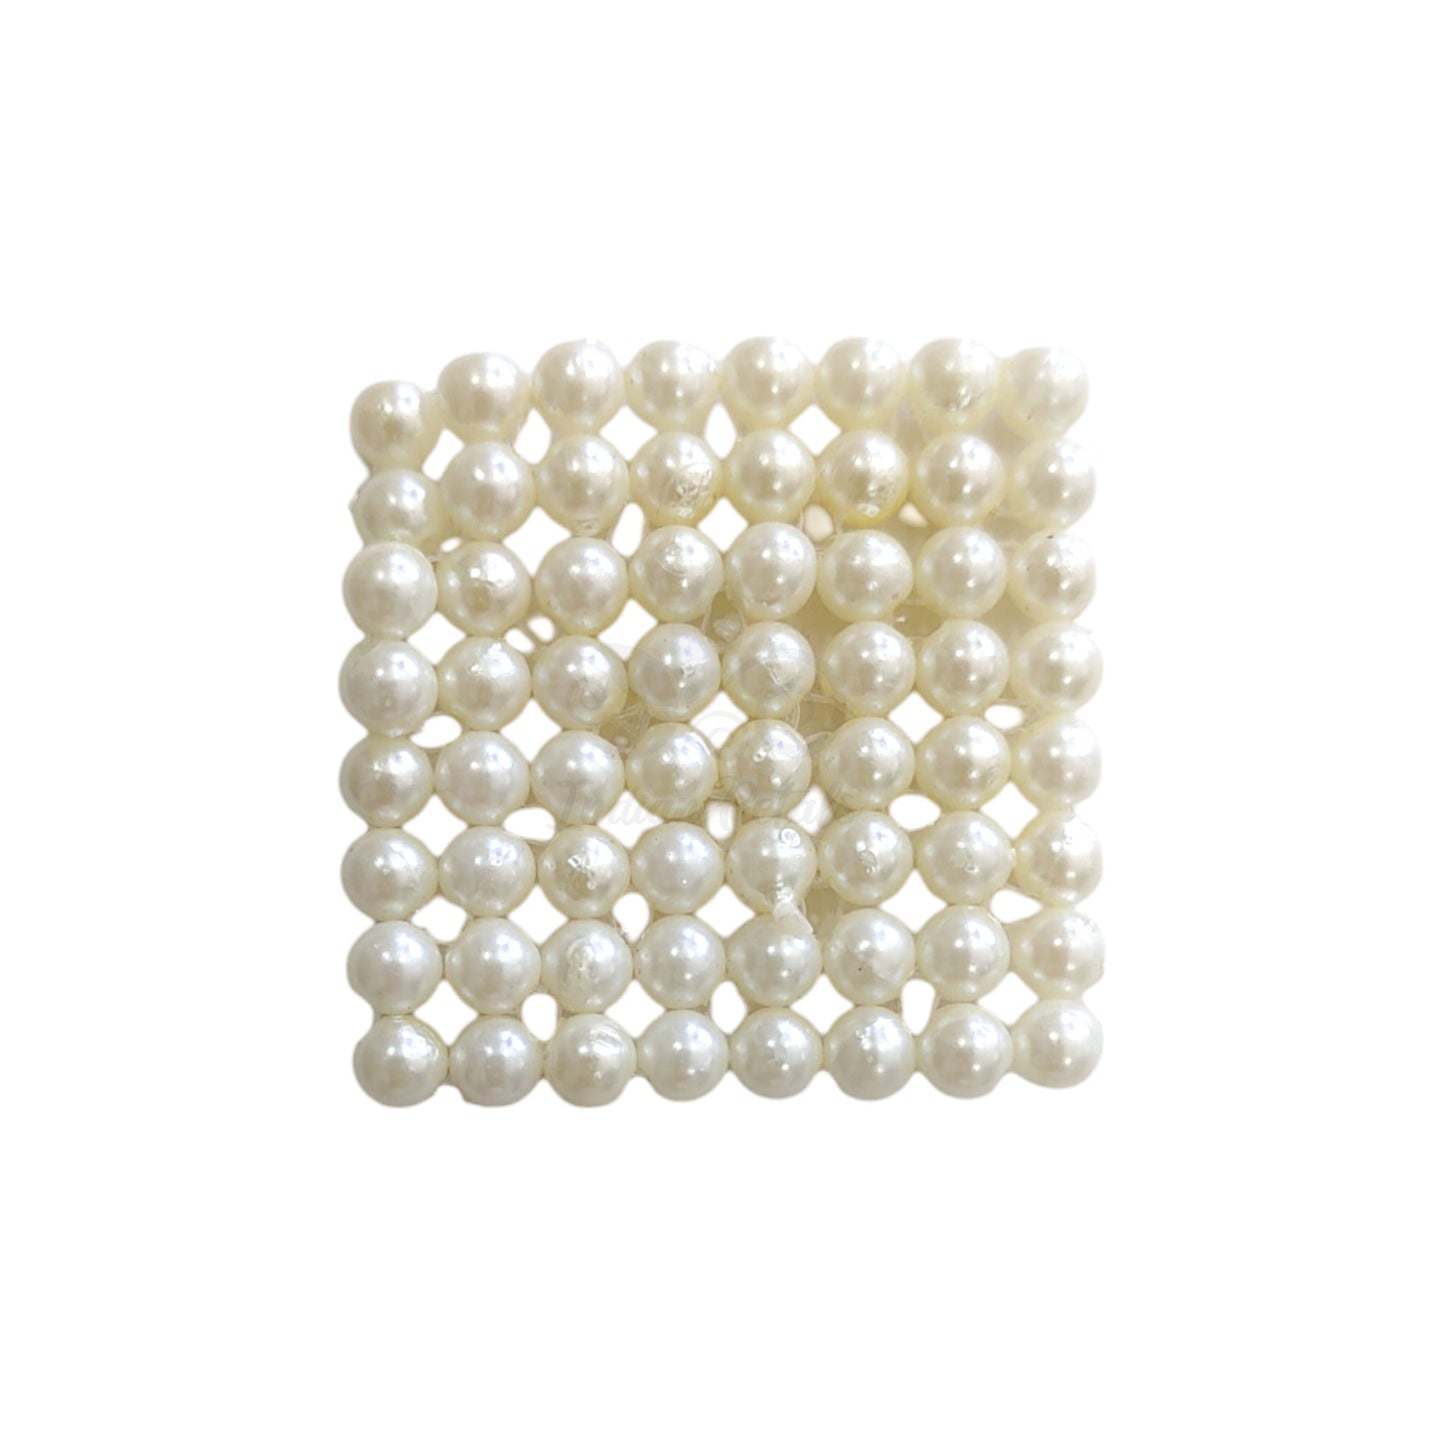 12x12 Motivo de Chatai cuadrado con cuentas de color blanco perla para joyería, manualidades o decoración - 11469 